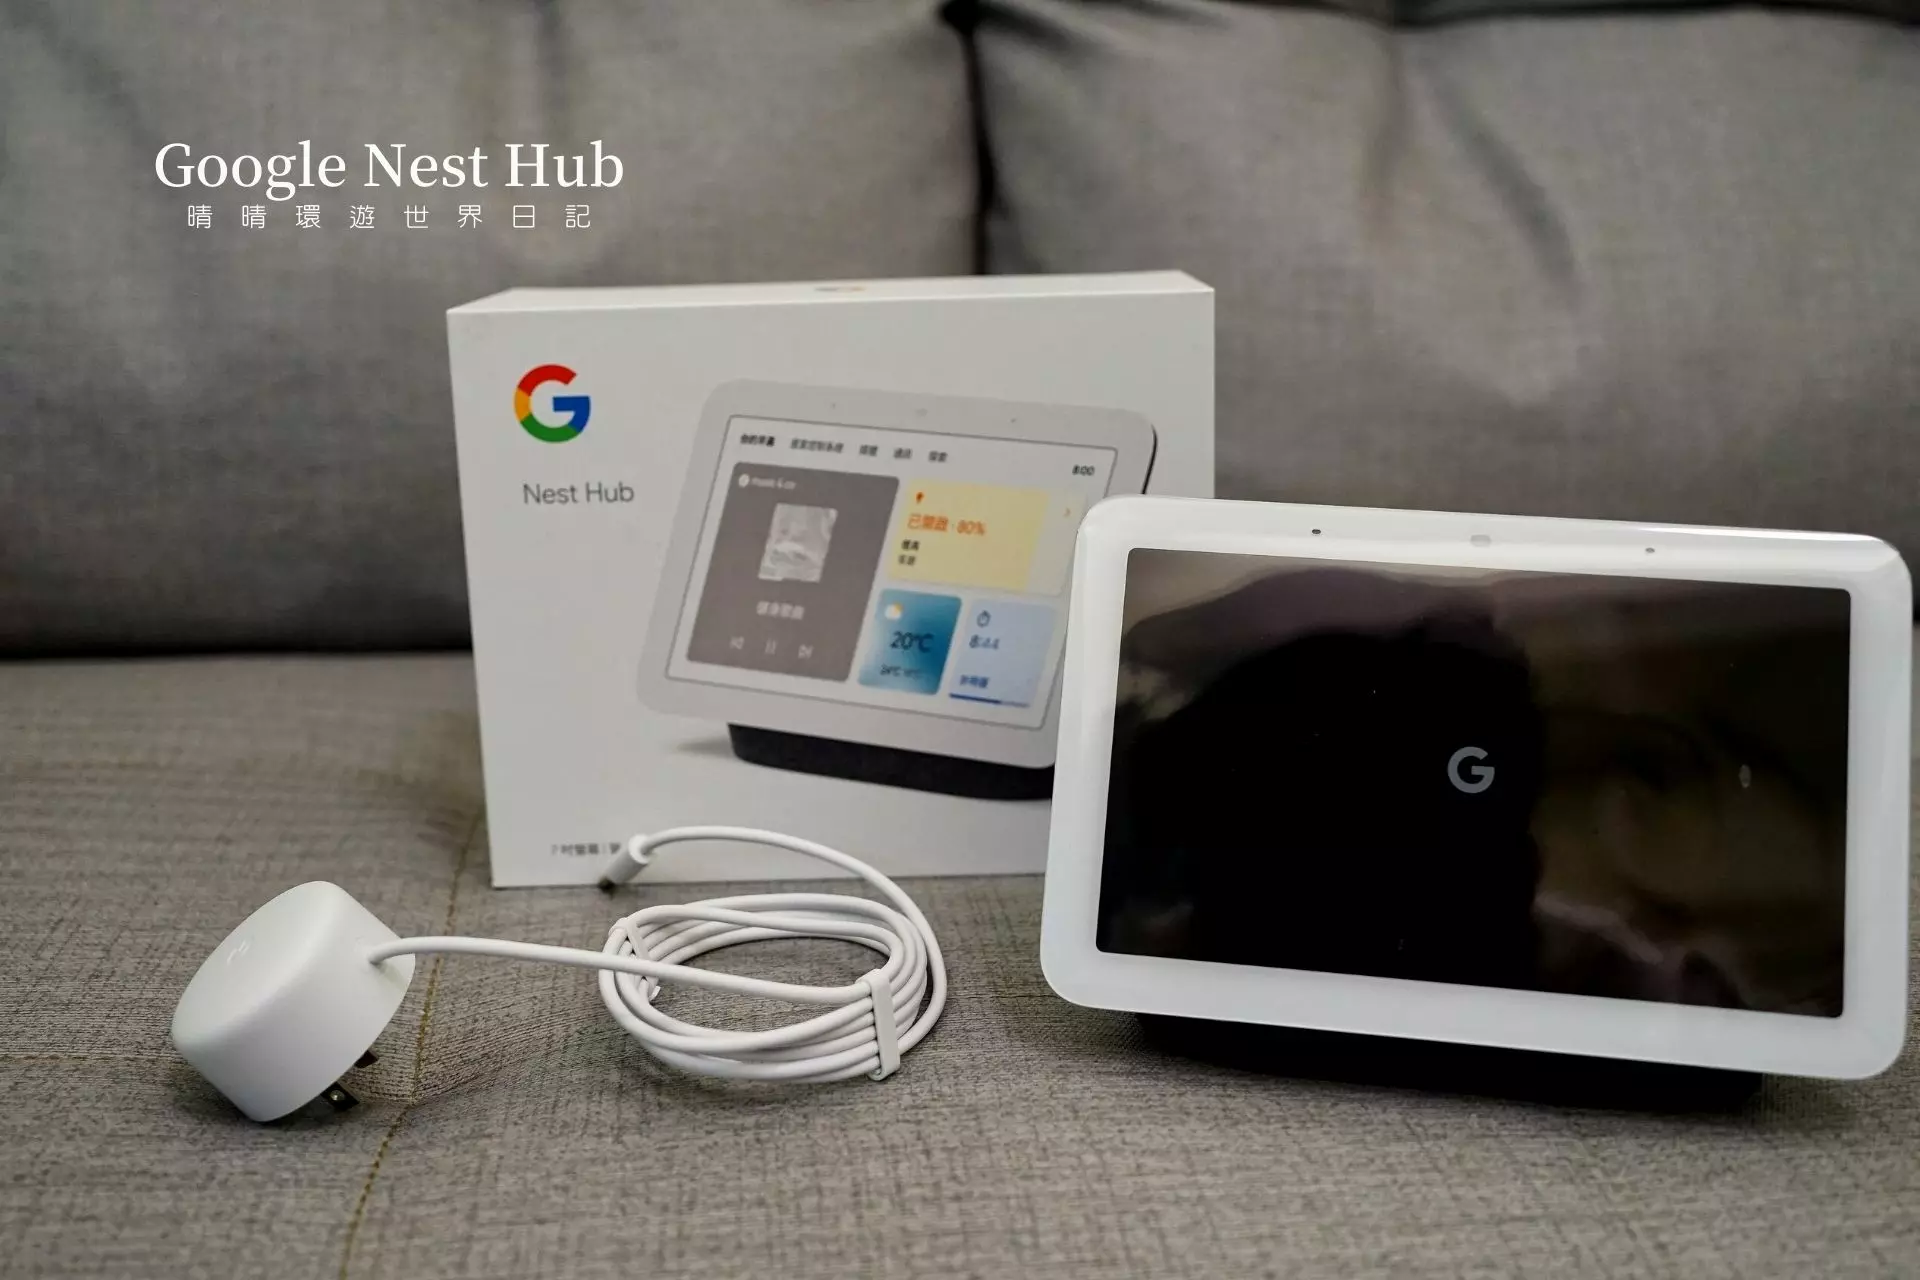 開箱] Google Nest Hub (第2 代) 滿足智慧家庭每個空間需求每個房間都要放一台